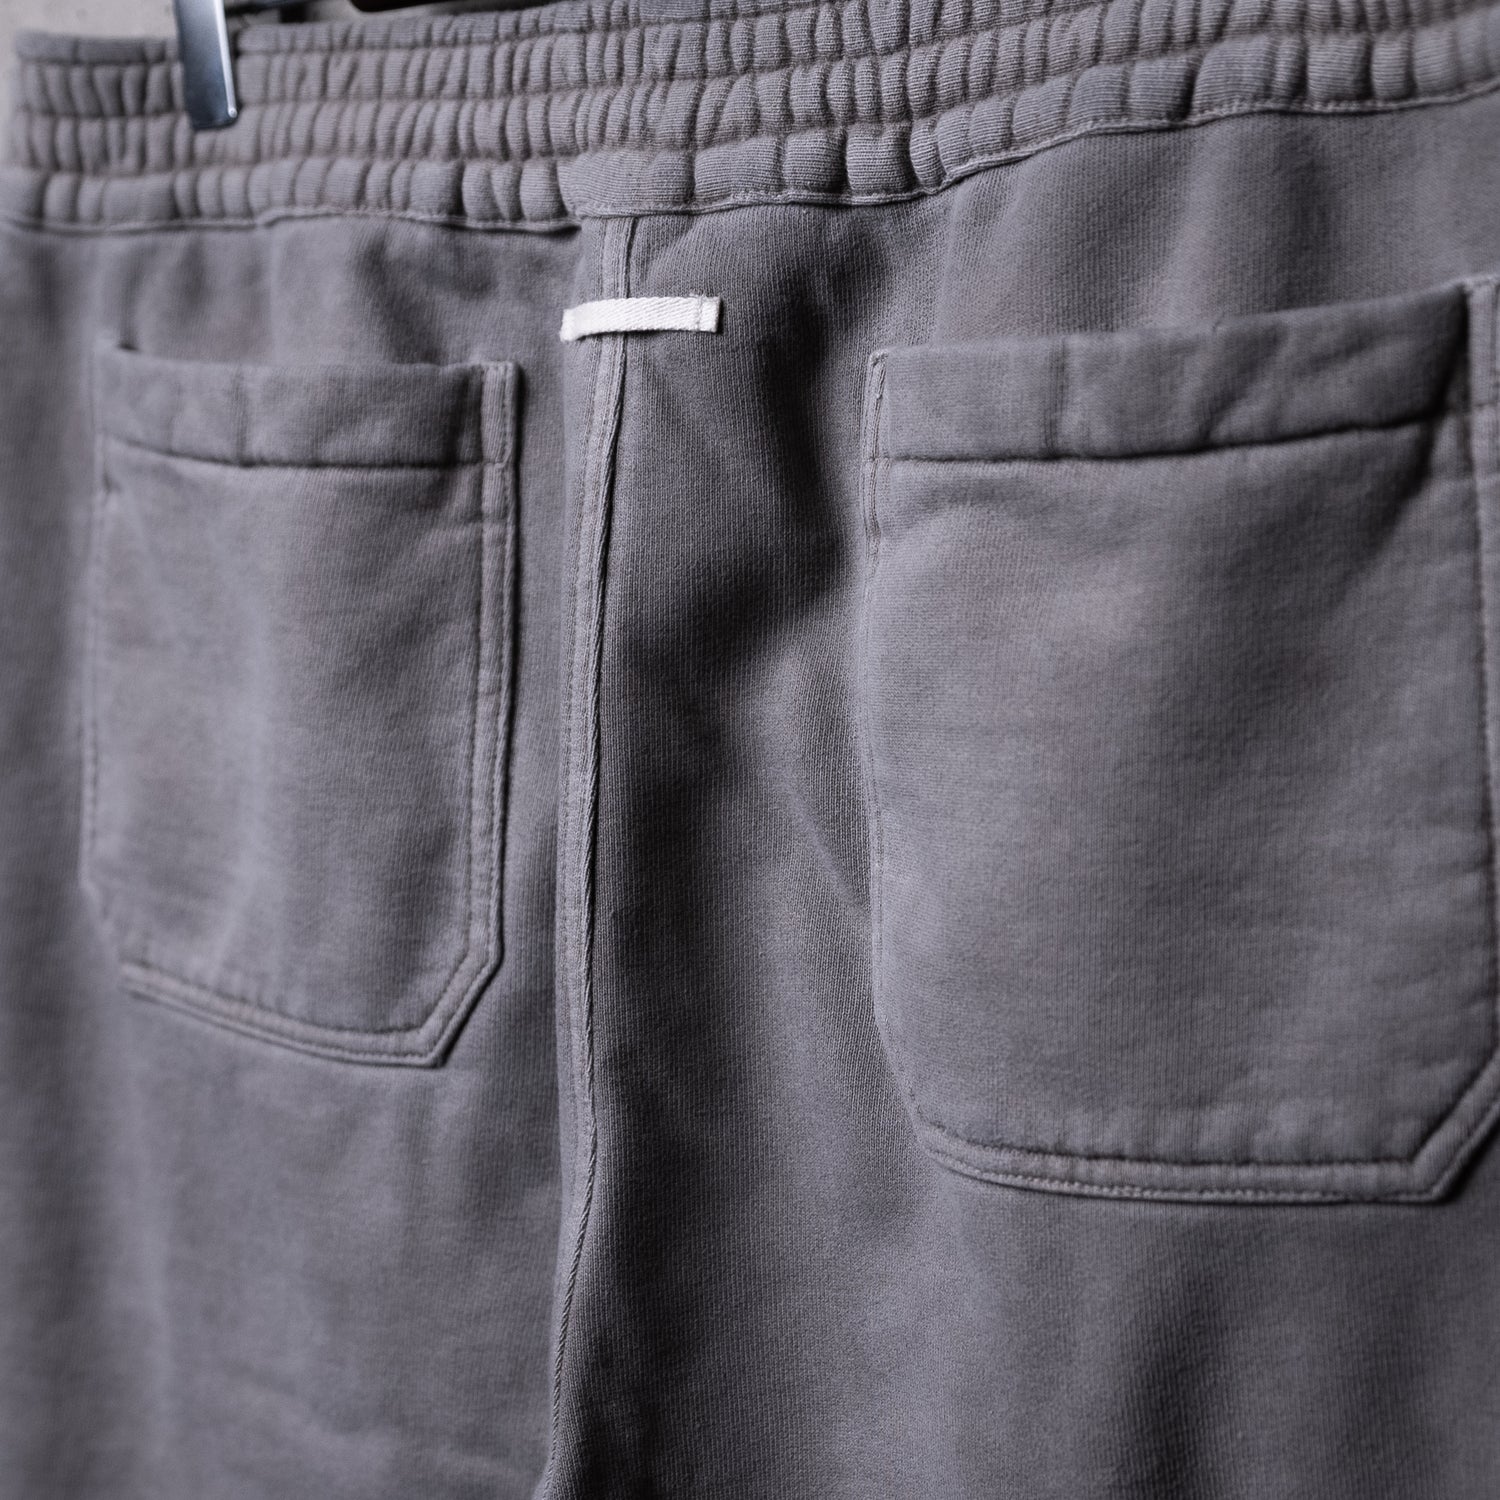 14350円銀座 三越 セール新品 キネマ Kinema pigment dyed sweat pants